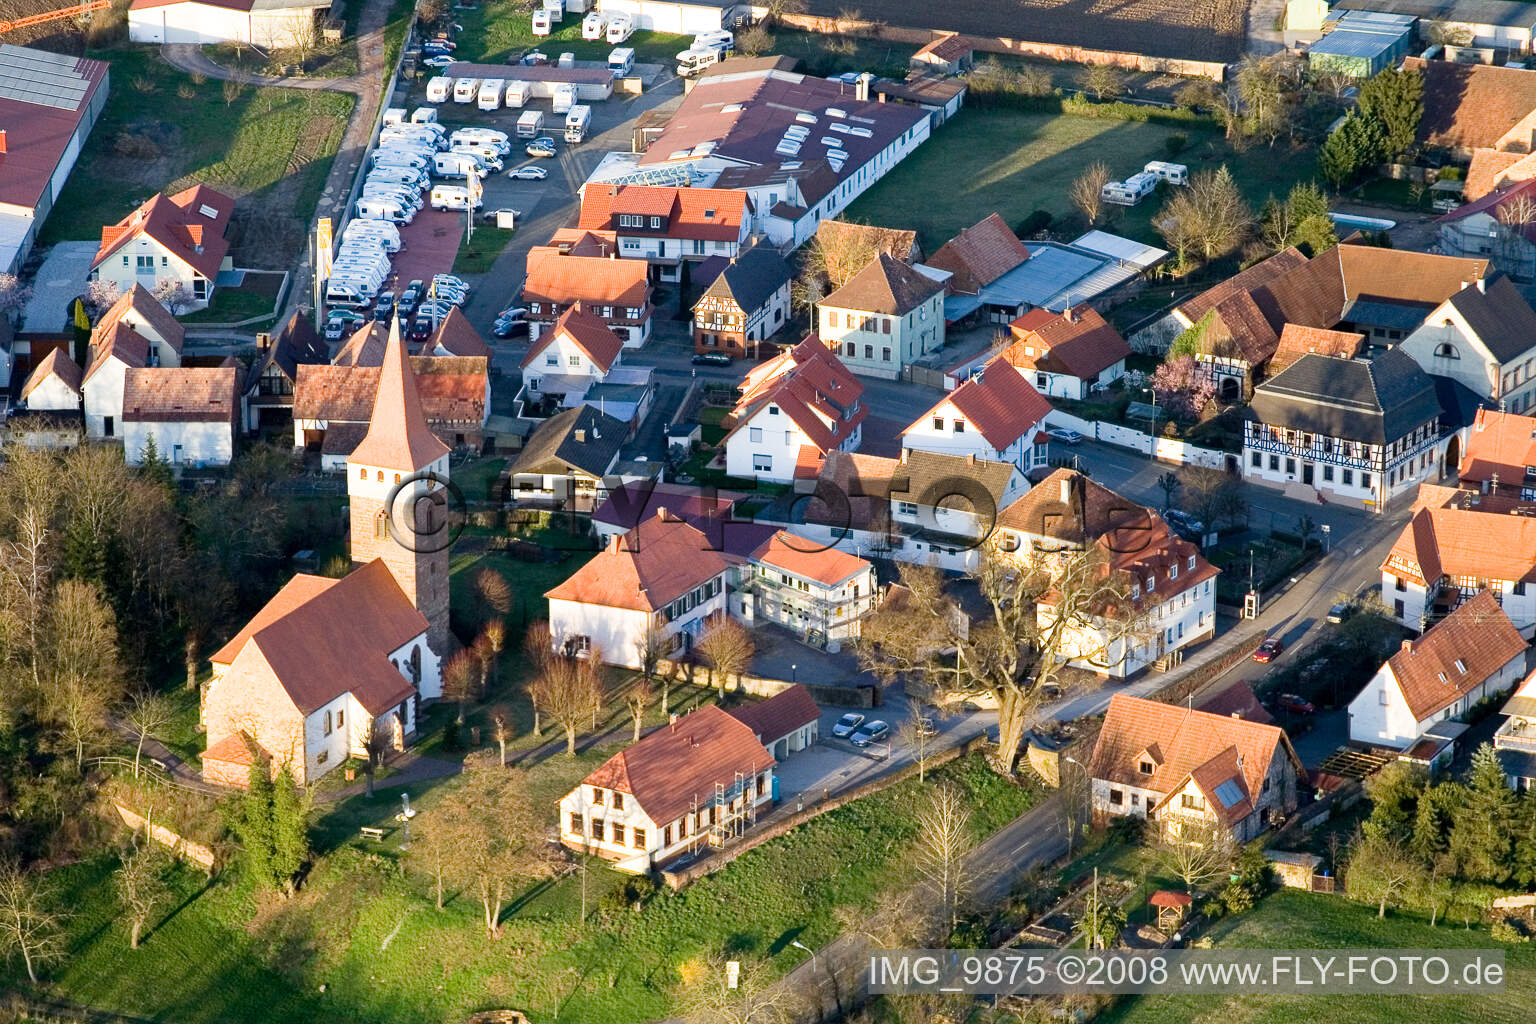 Vue aérienne de Église protestante de l'ouest à Minfeld dans le département Rhénanie-Palatinat, Allemagne